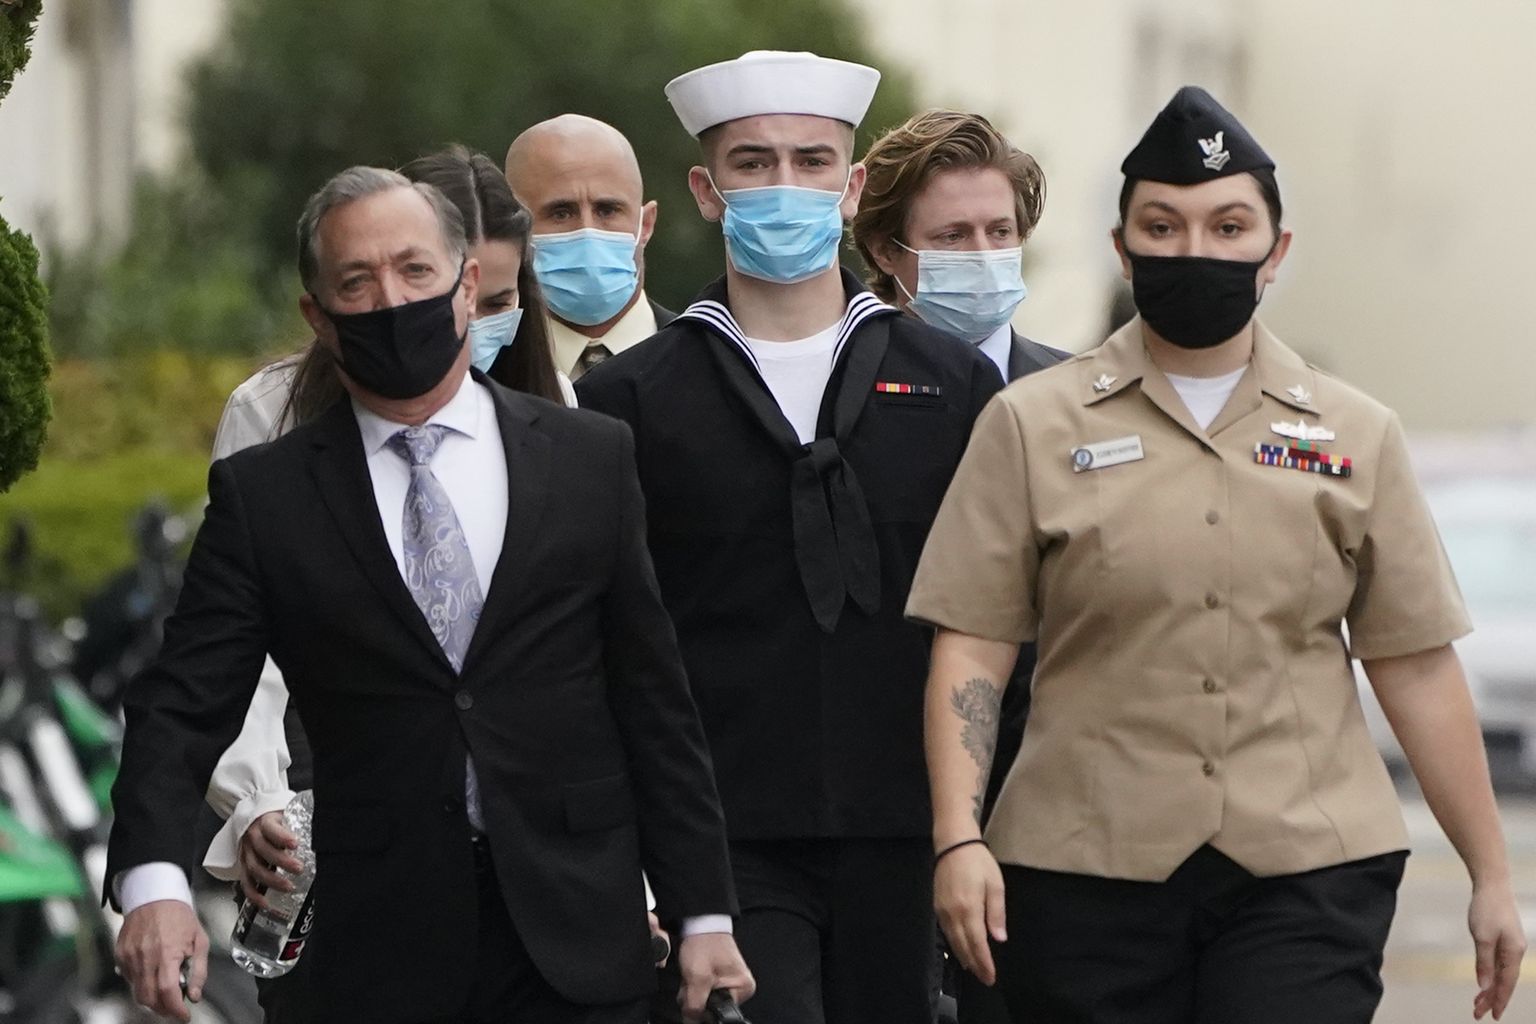 USA mereväelane Ryan Sawyer Mays (keskel) saabumas koos oma advokaatidega 13. detsembril San Diego mereväebaasi eeluurimise istungile